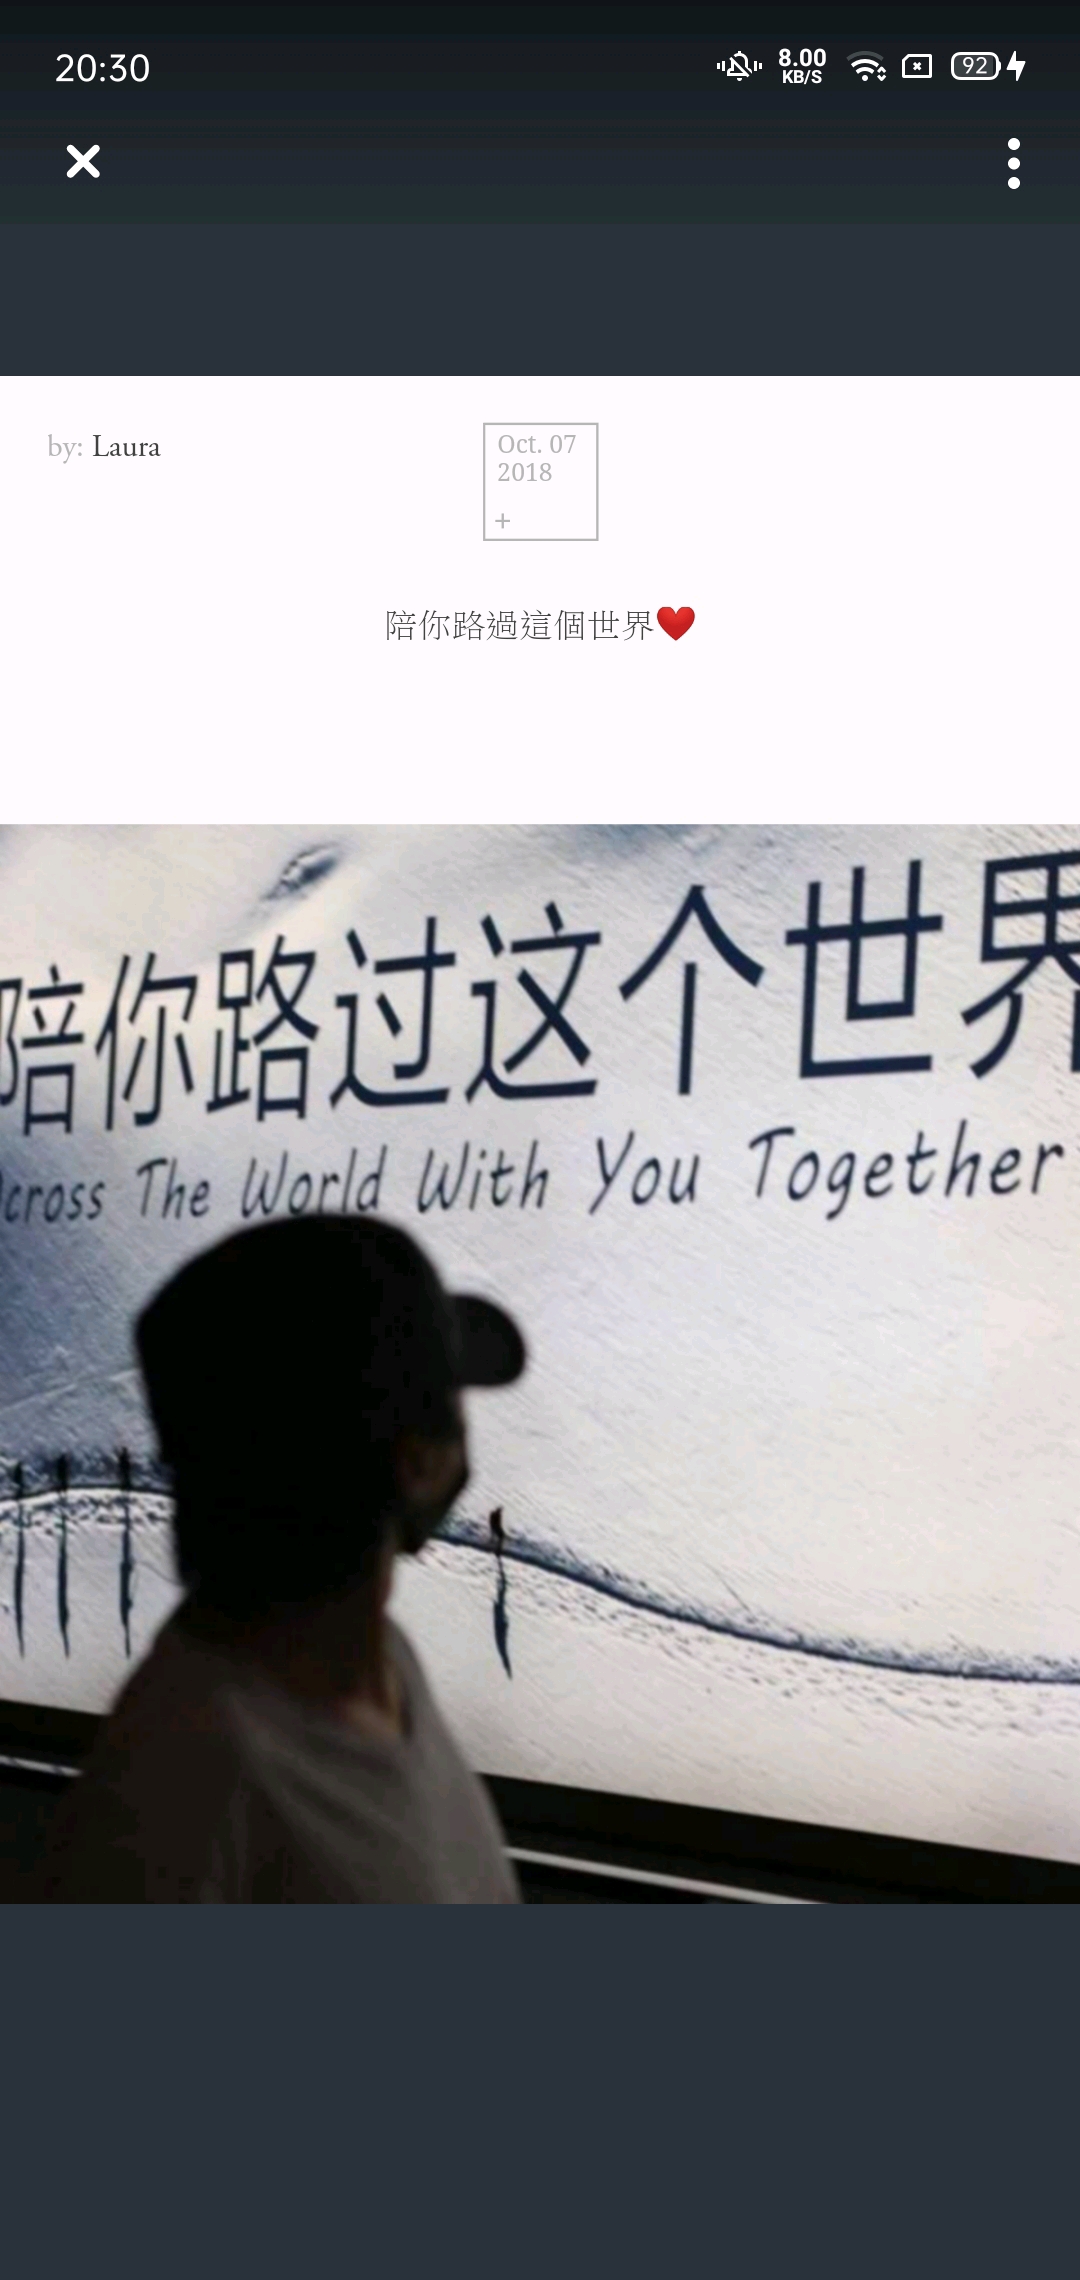 ‎《你是路过我的风 (DJ默涵版) - Single》- 刘钧的专辑 - Apple Music